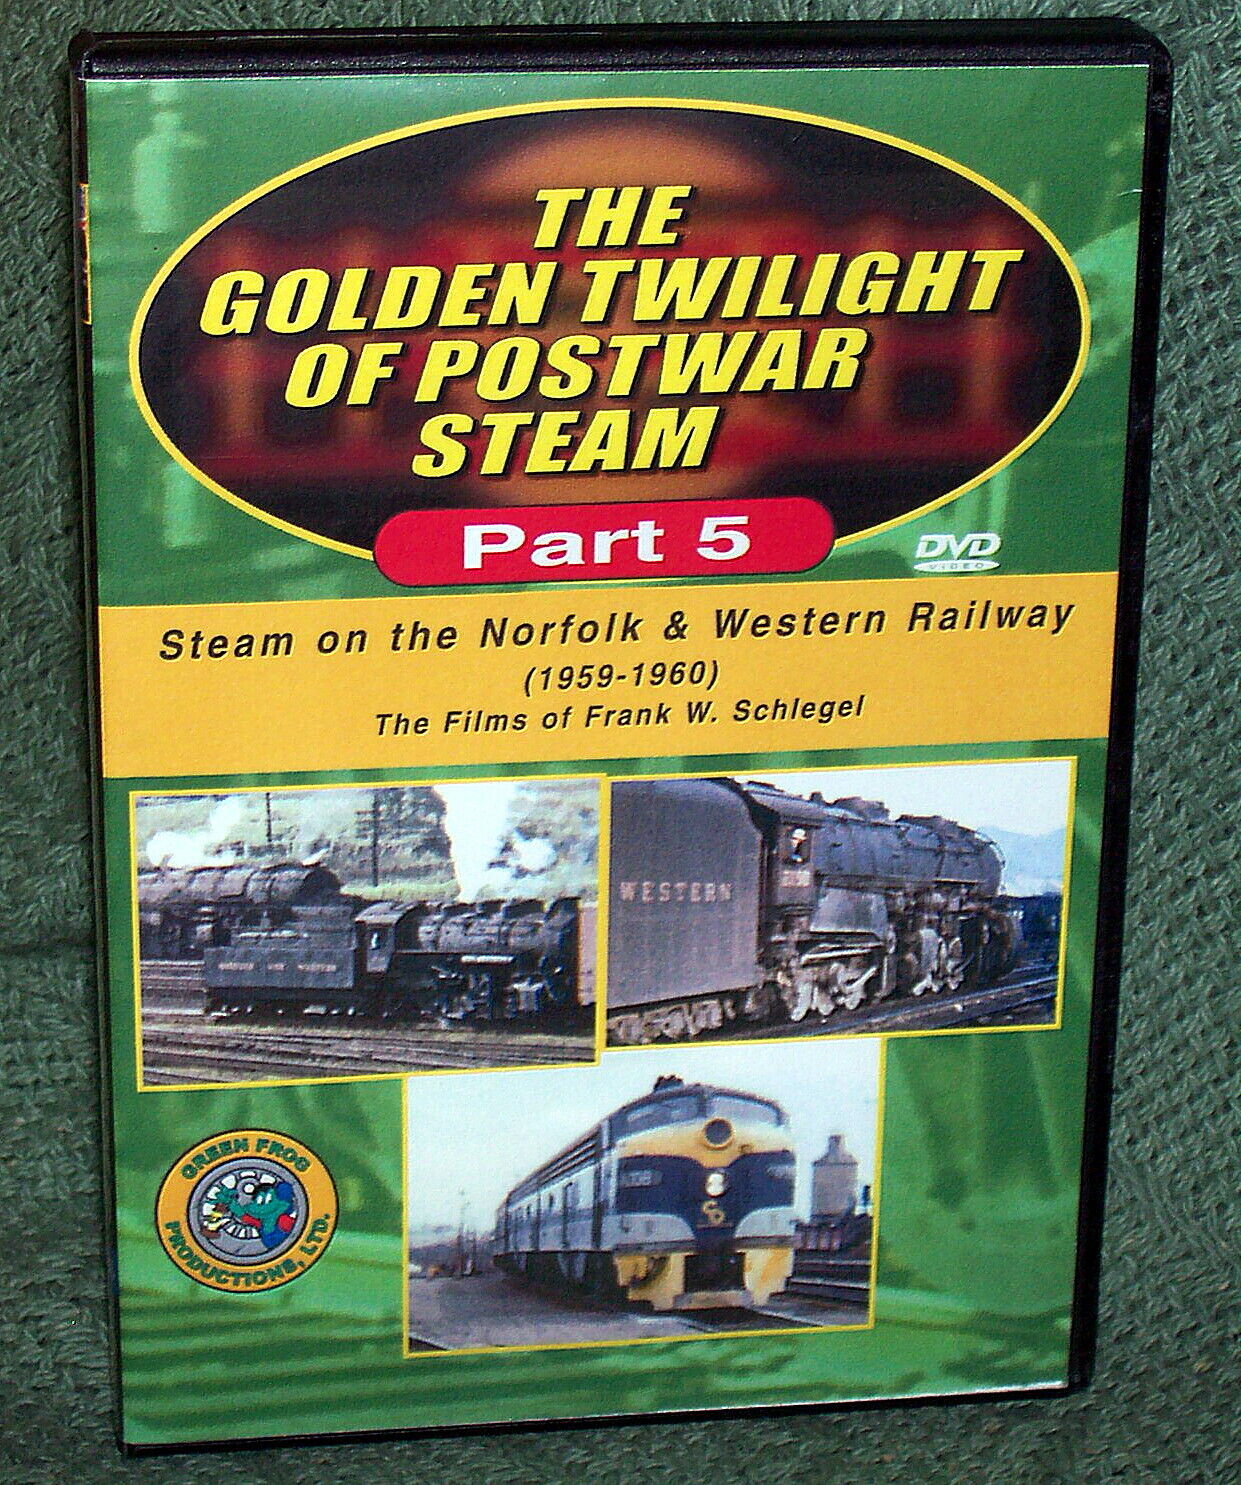 20359 - POSTWAR STEAM VOLUME 5 Steam on the Norfolk & Western Railway 1959-1960